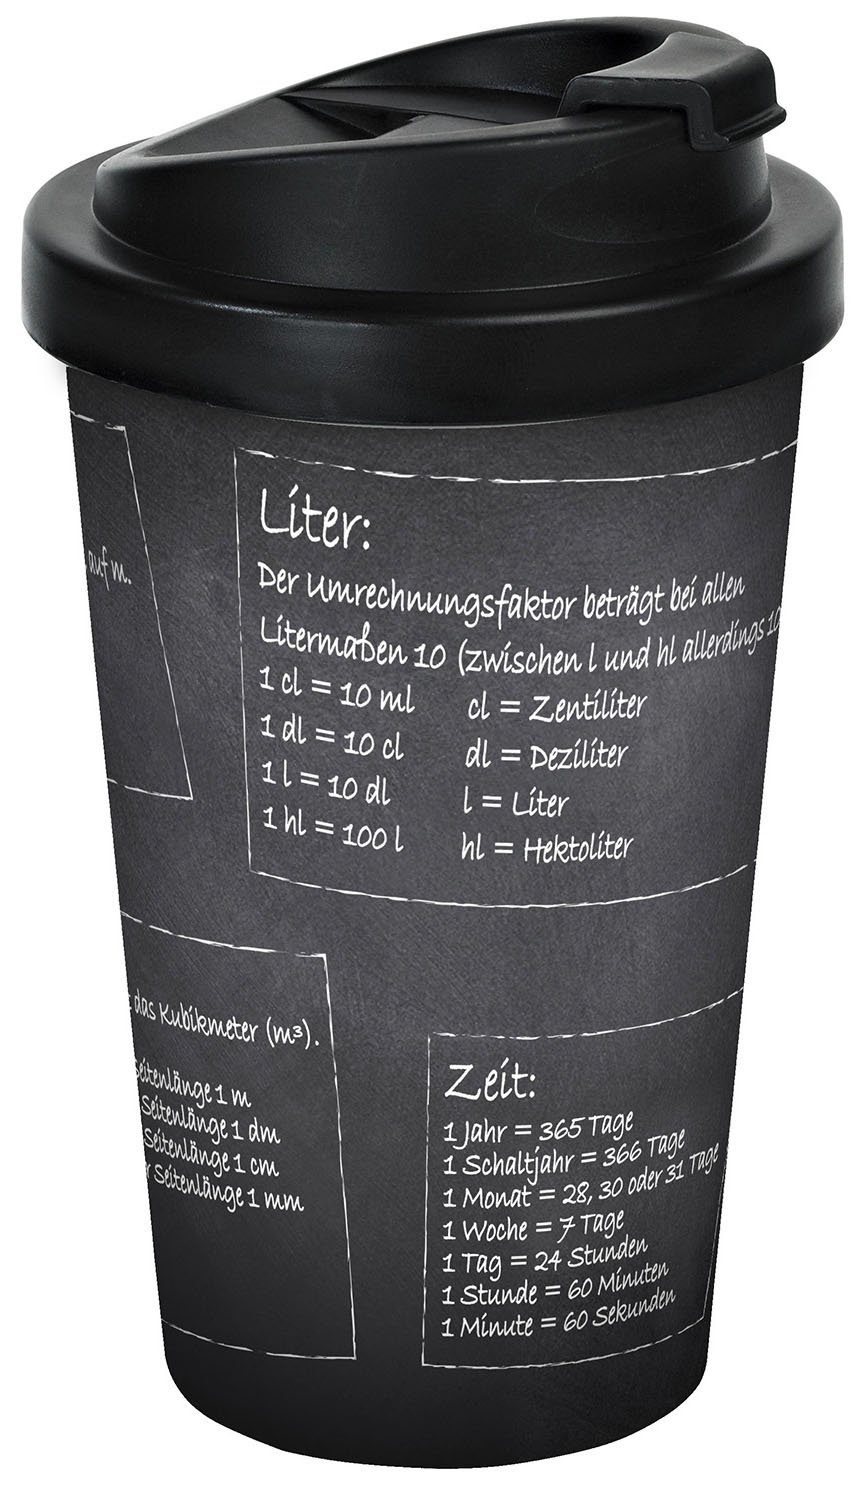 Geda Labels GmbH Coffee-to-go-Becher Mathe, PP, Schwarz, 400 ml, doppelwandig, auslaufsicher